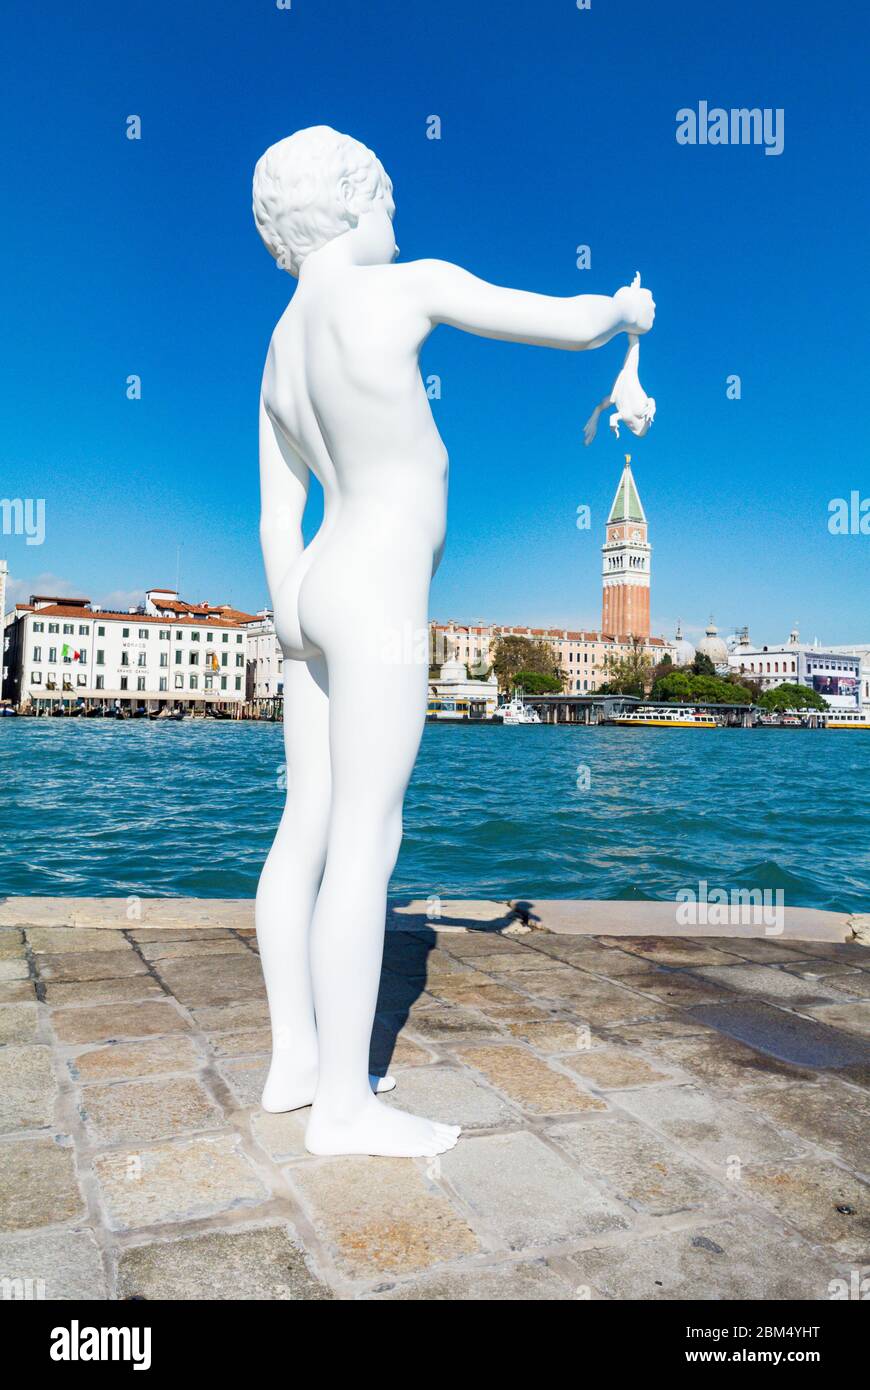 Ragazzo con la rana. Statua di Charles Ray a Punta della Dogana a d'arte della Biennale di Venezia, veneto, Italia Foto Stock